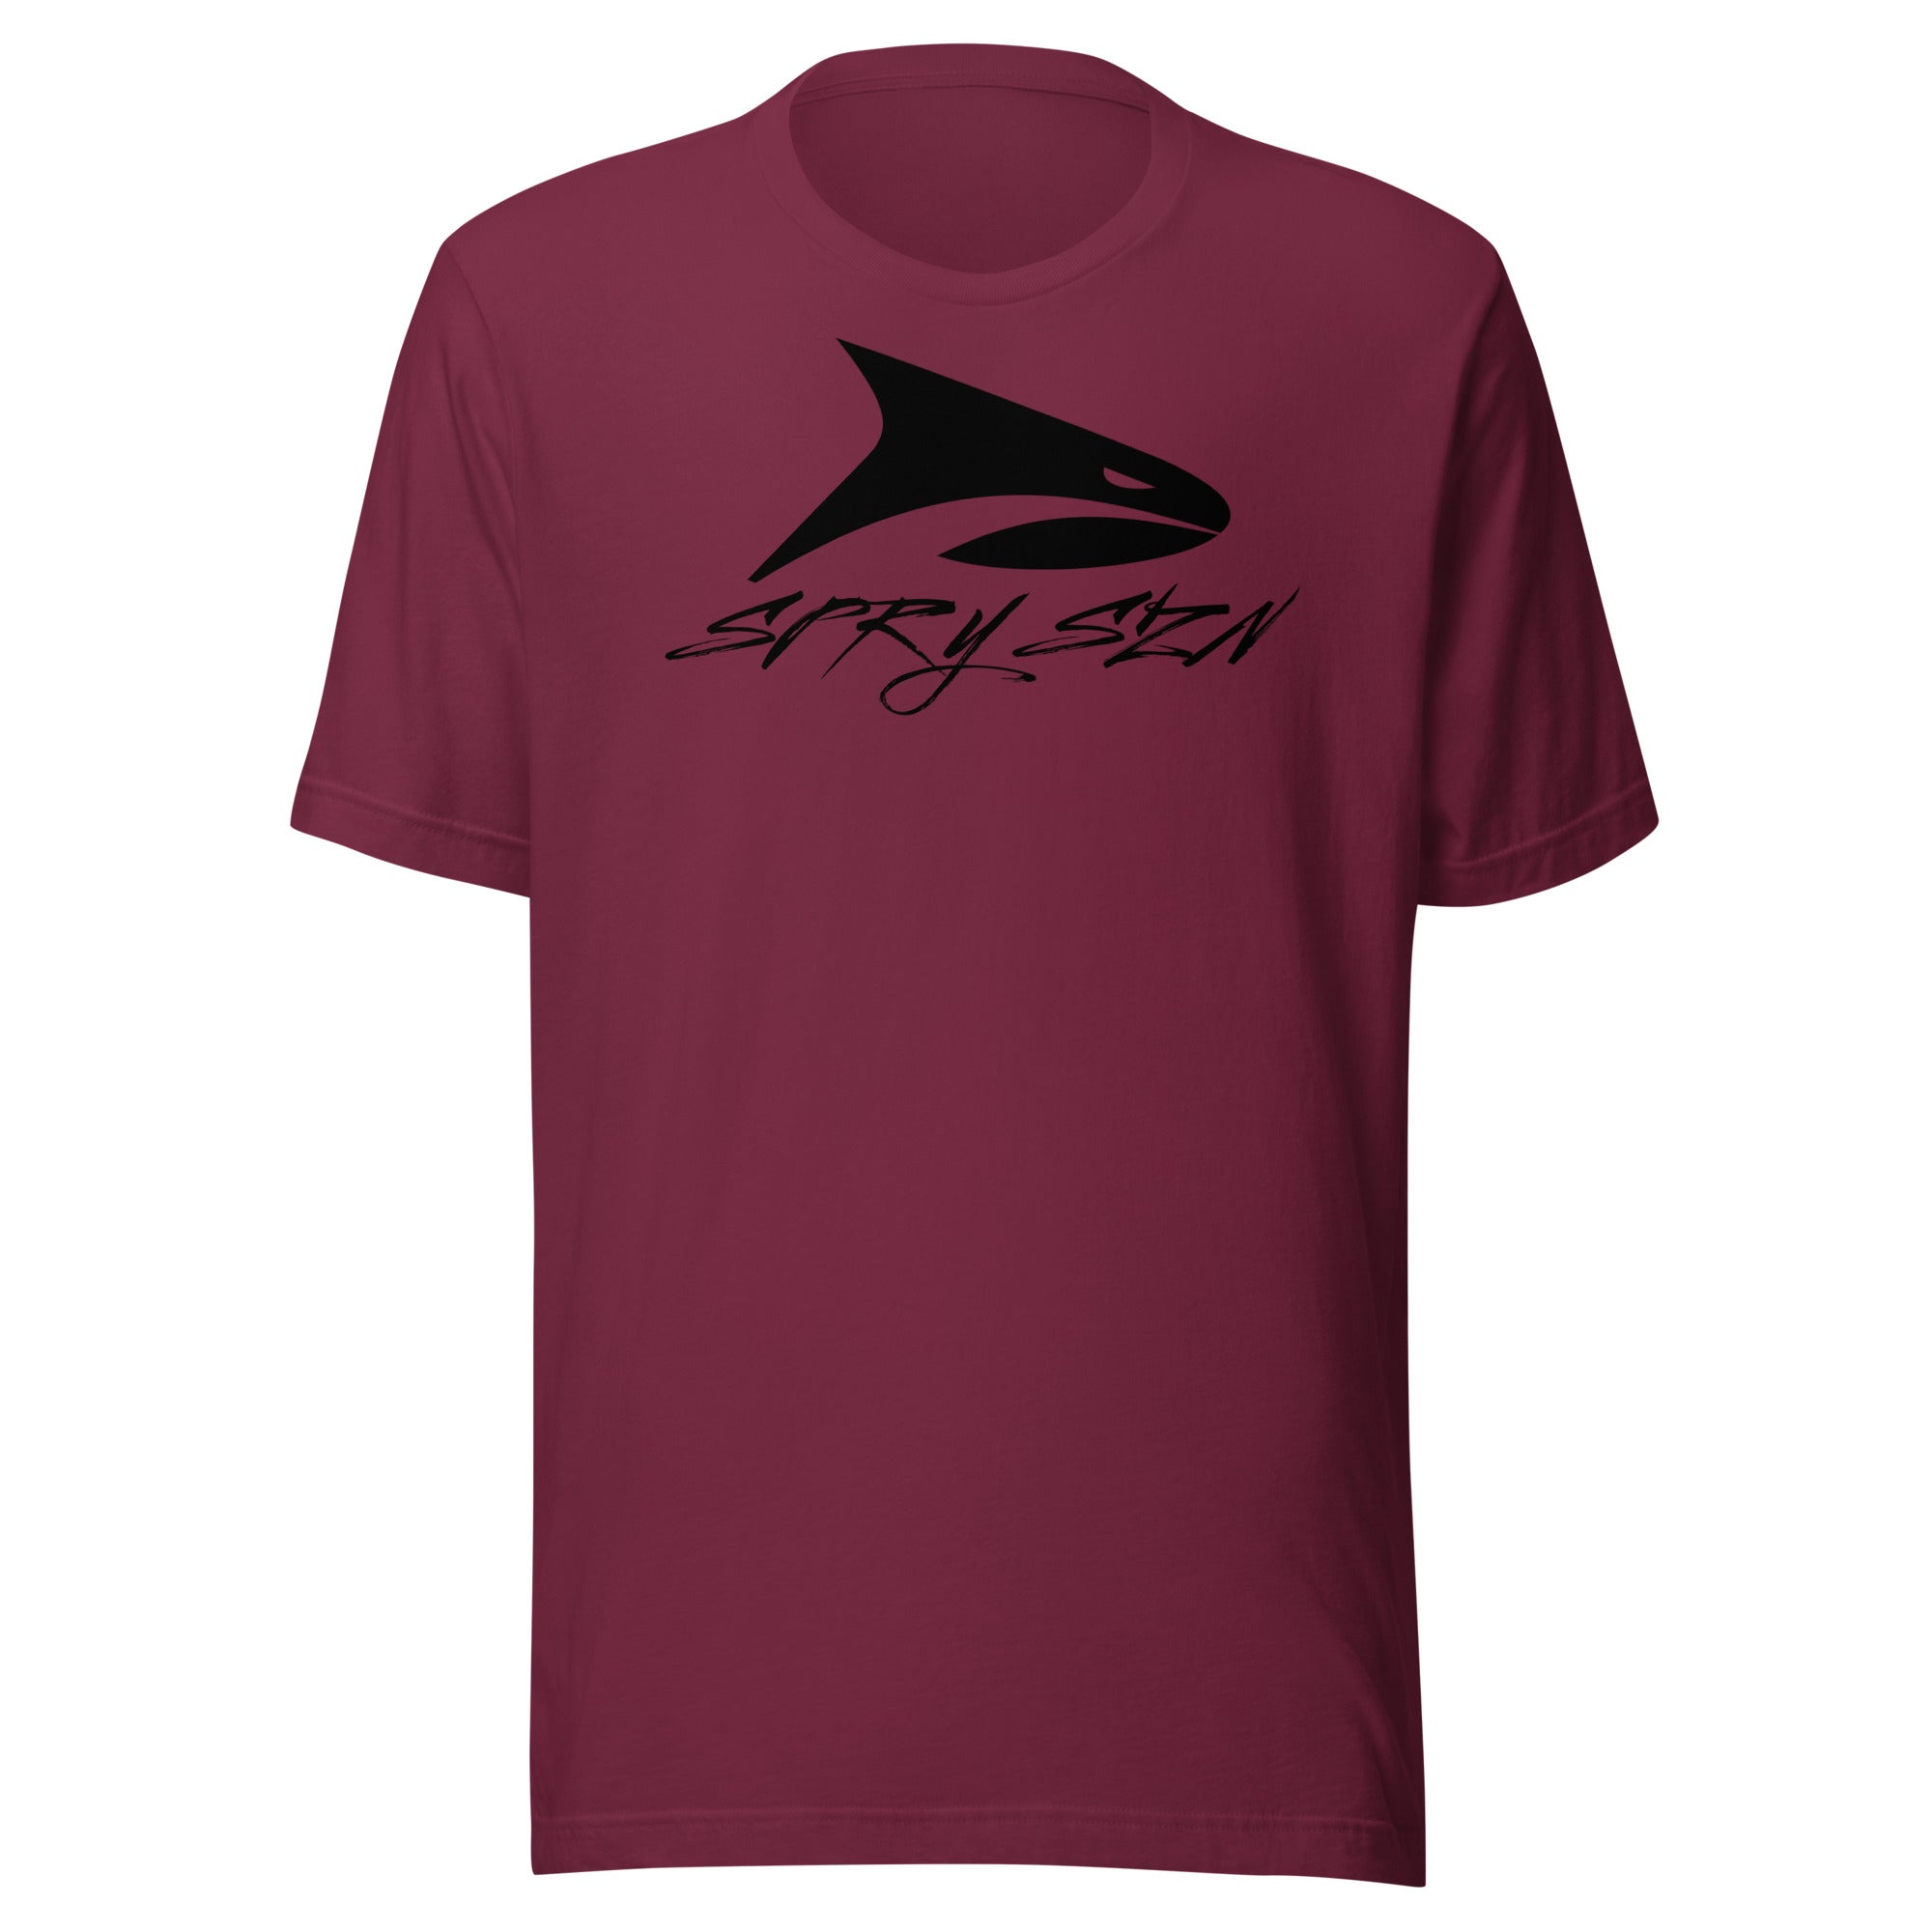 SPRY SZN Black Shark T-Shirt